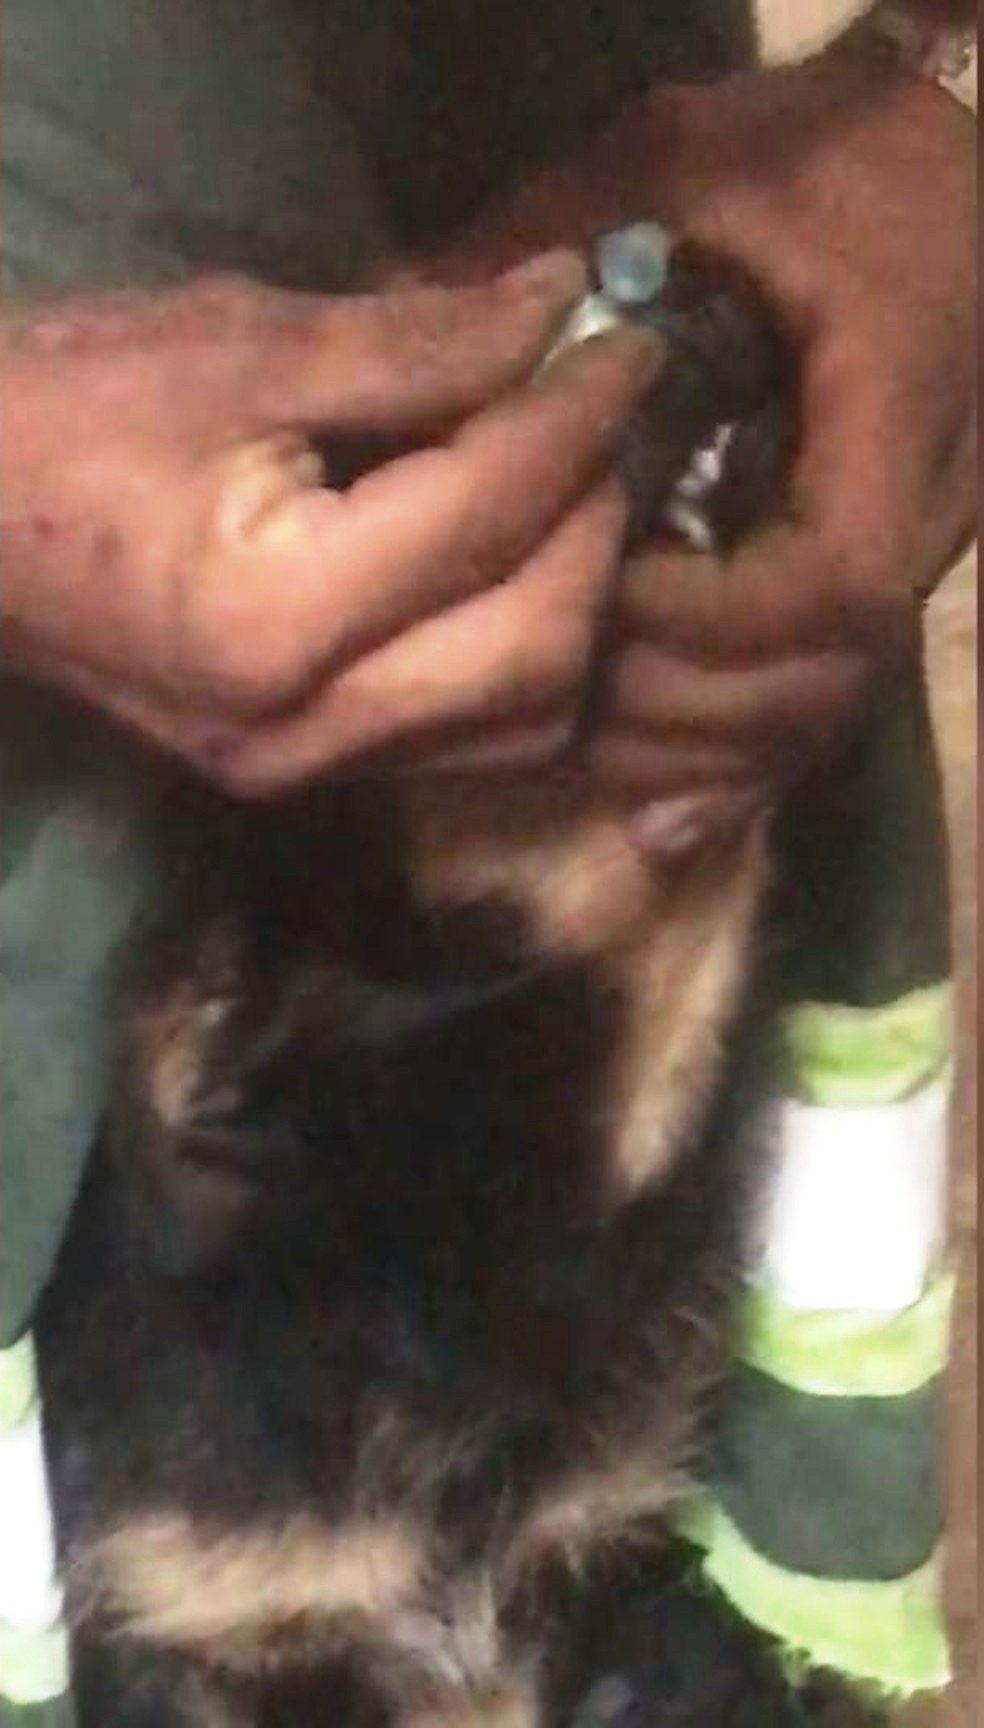 Animal foi drogado pelo suspeito. Caso é investigado pela Polícia Civil em Cubatão, SP — Foto: Reprodução